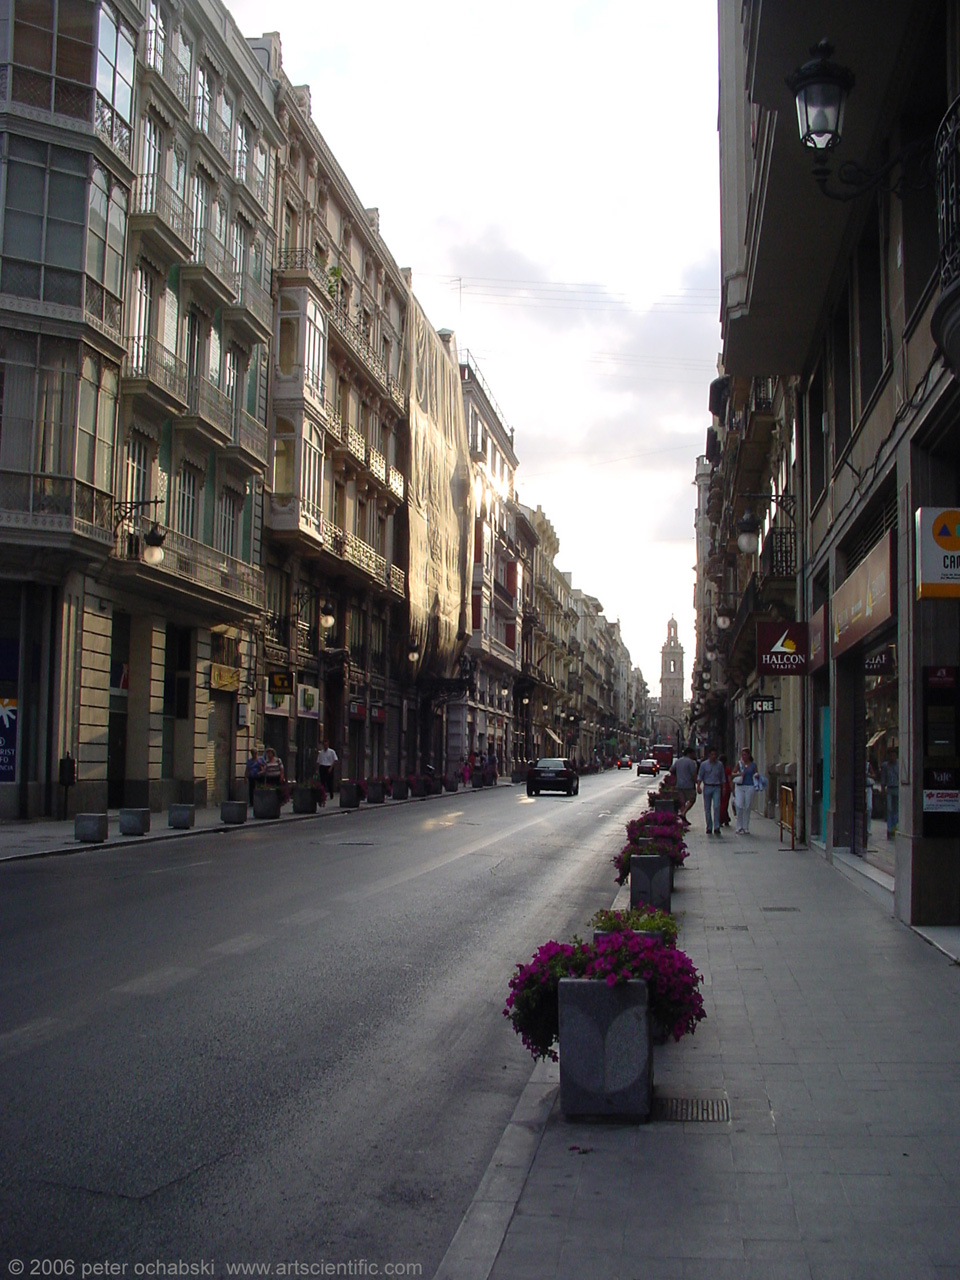 valencia spain street